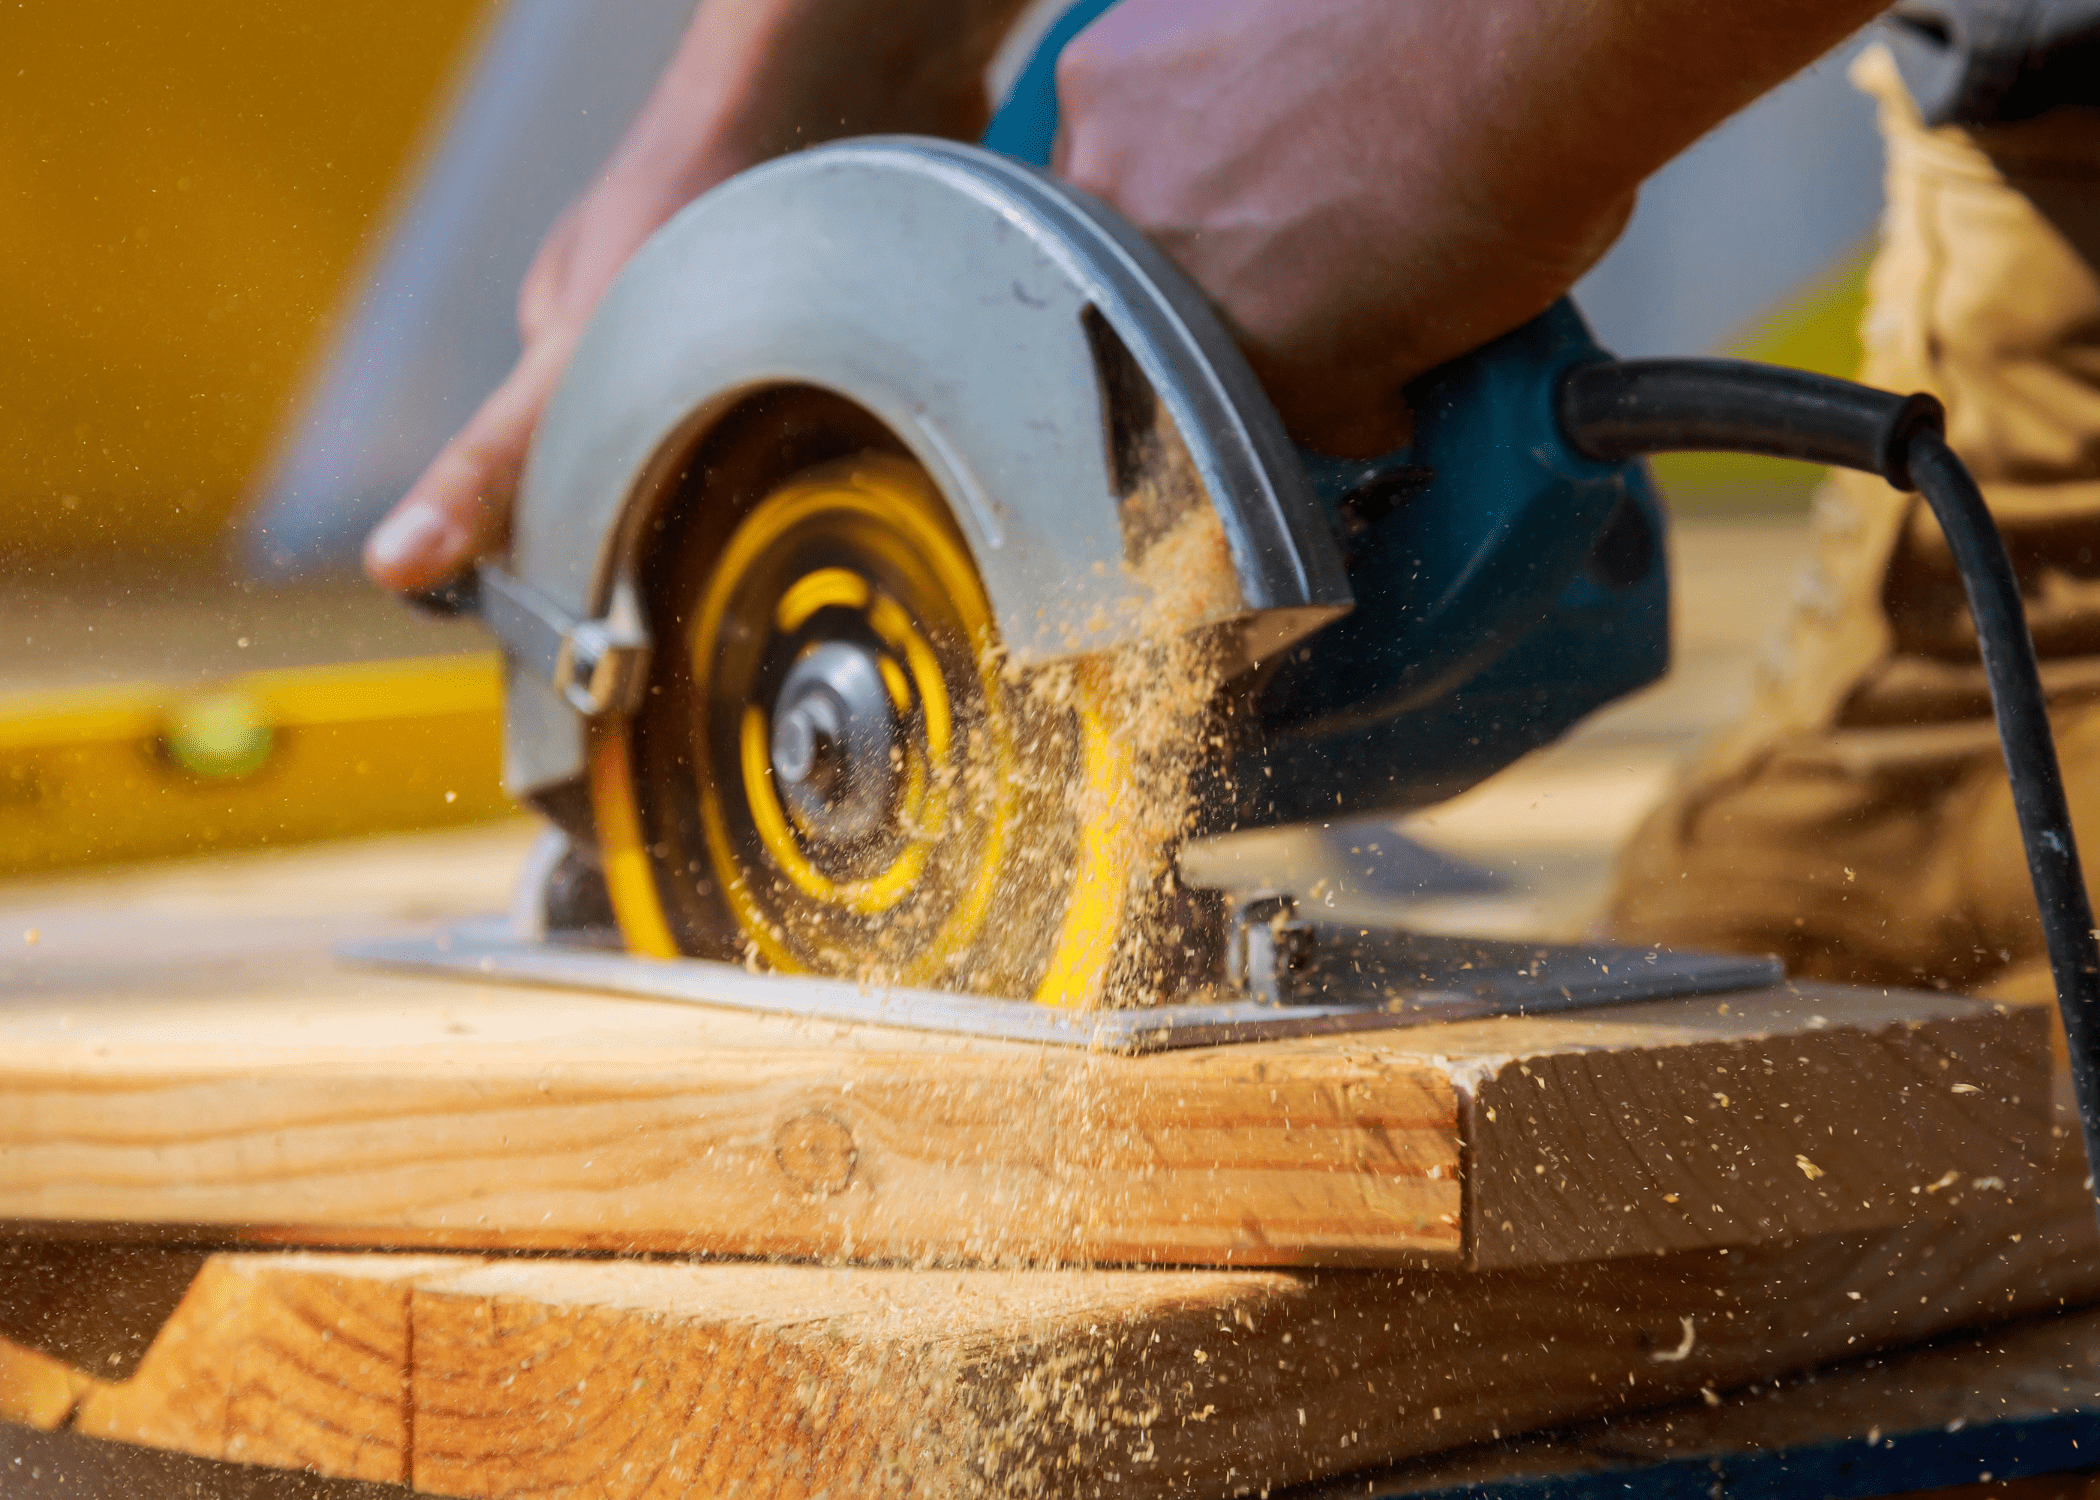 circular saw in motion cutting through wood